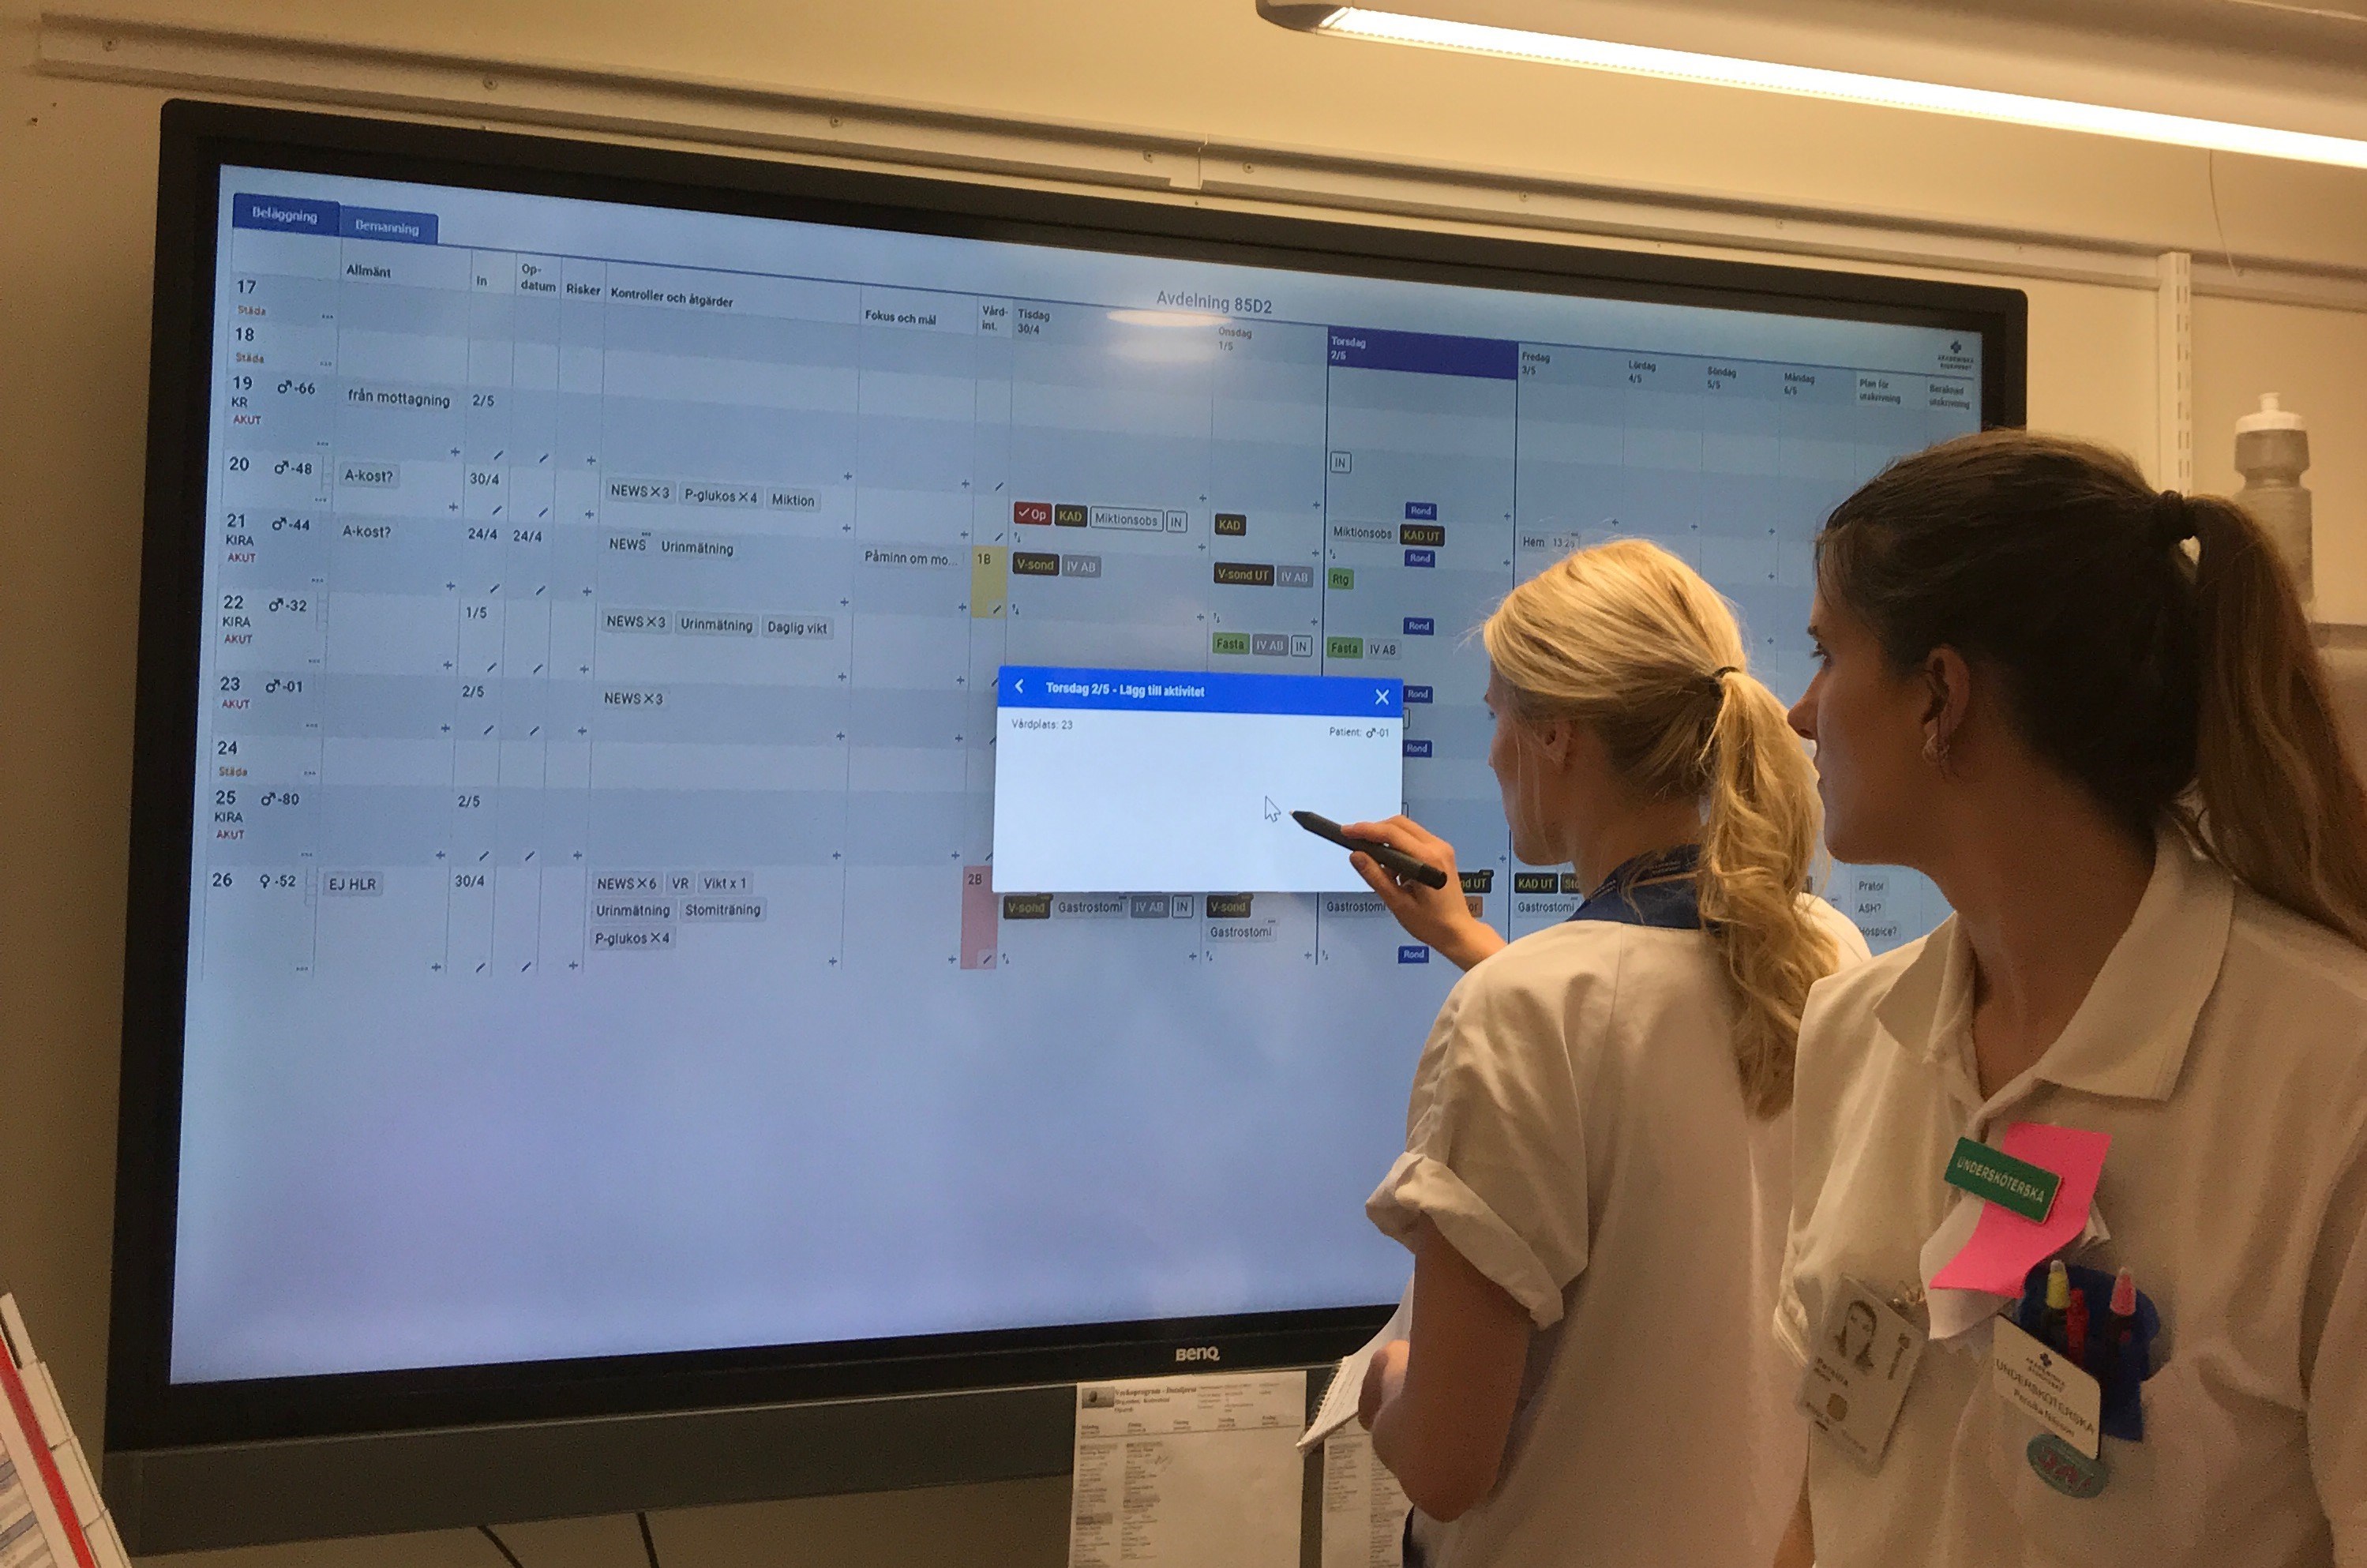 Digitaliserad visualisering och styrning av slutenvården på Akademiska sjukhuset